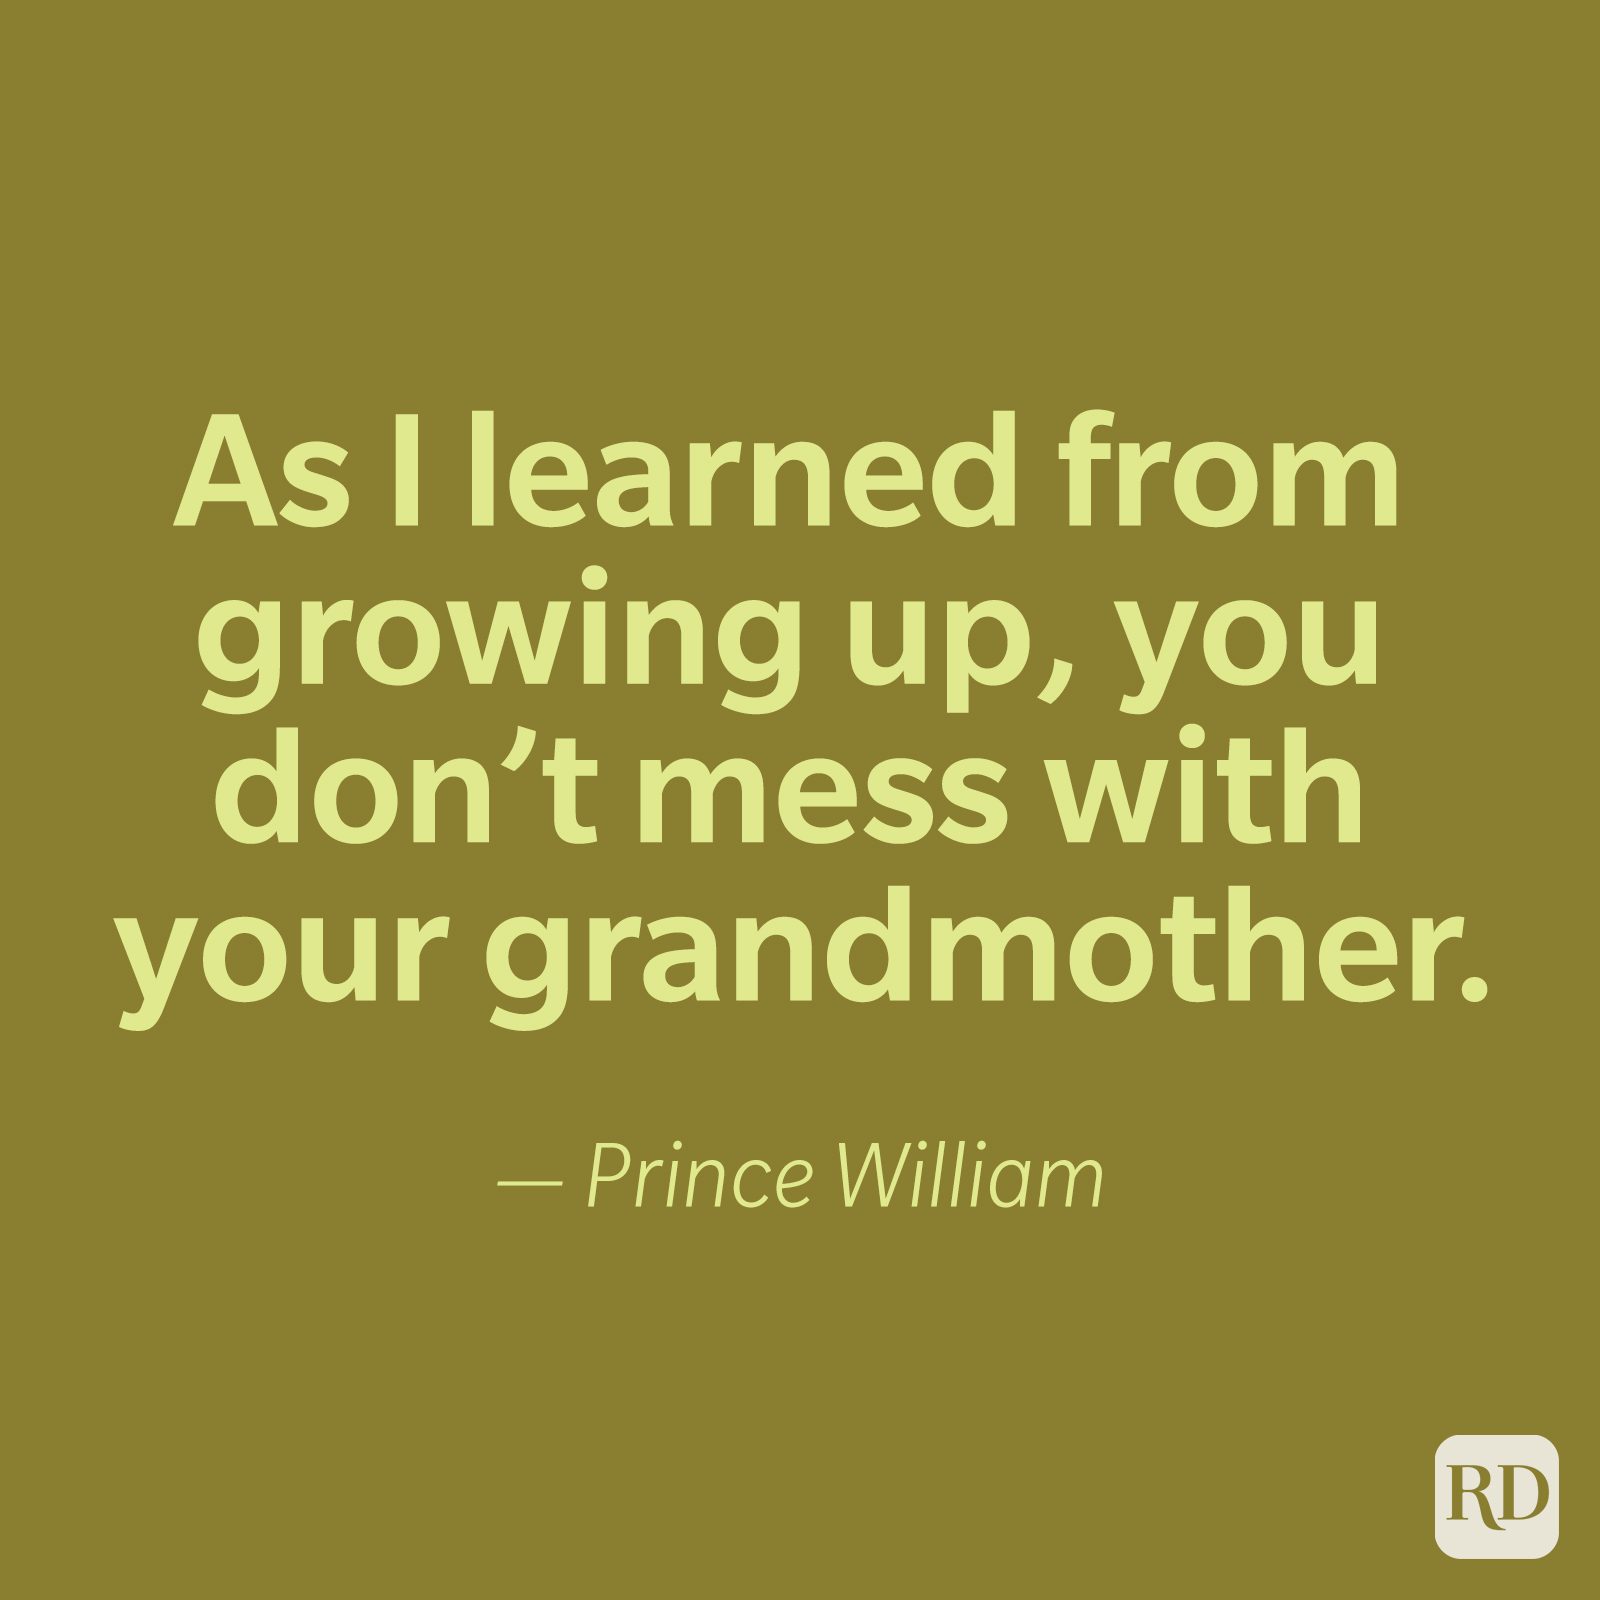 Prince William Quote